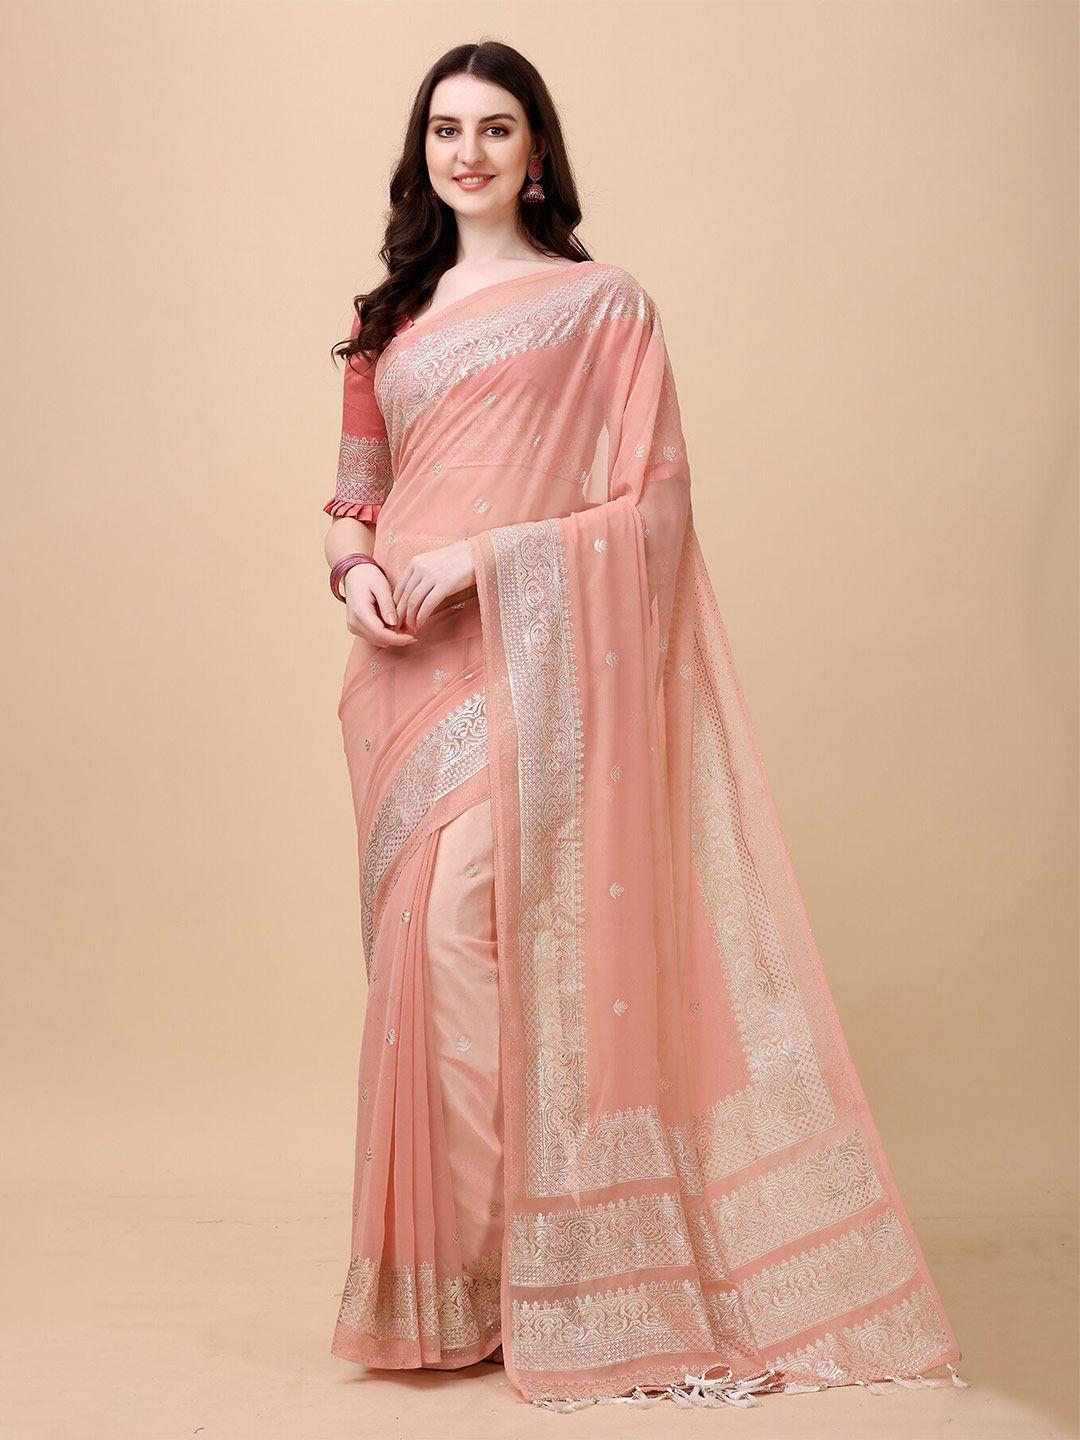 anjaneya sarees peach-coloured & silver-toned ethnic motifs silk blend banarasi saree